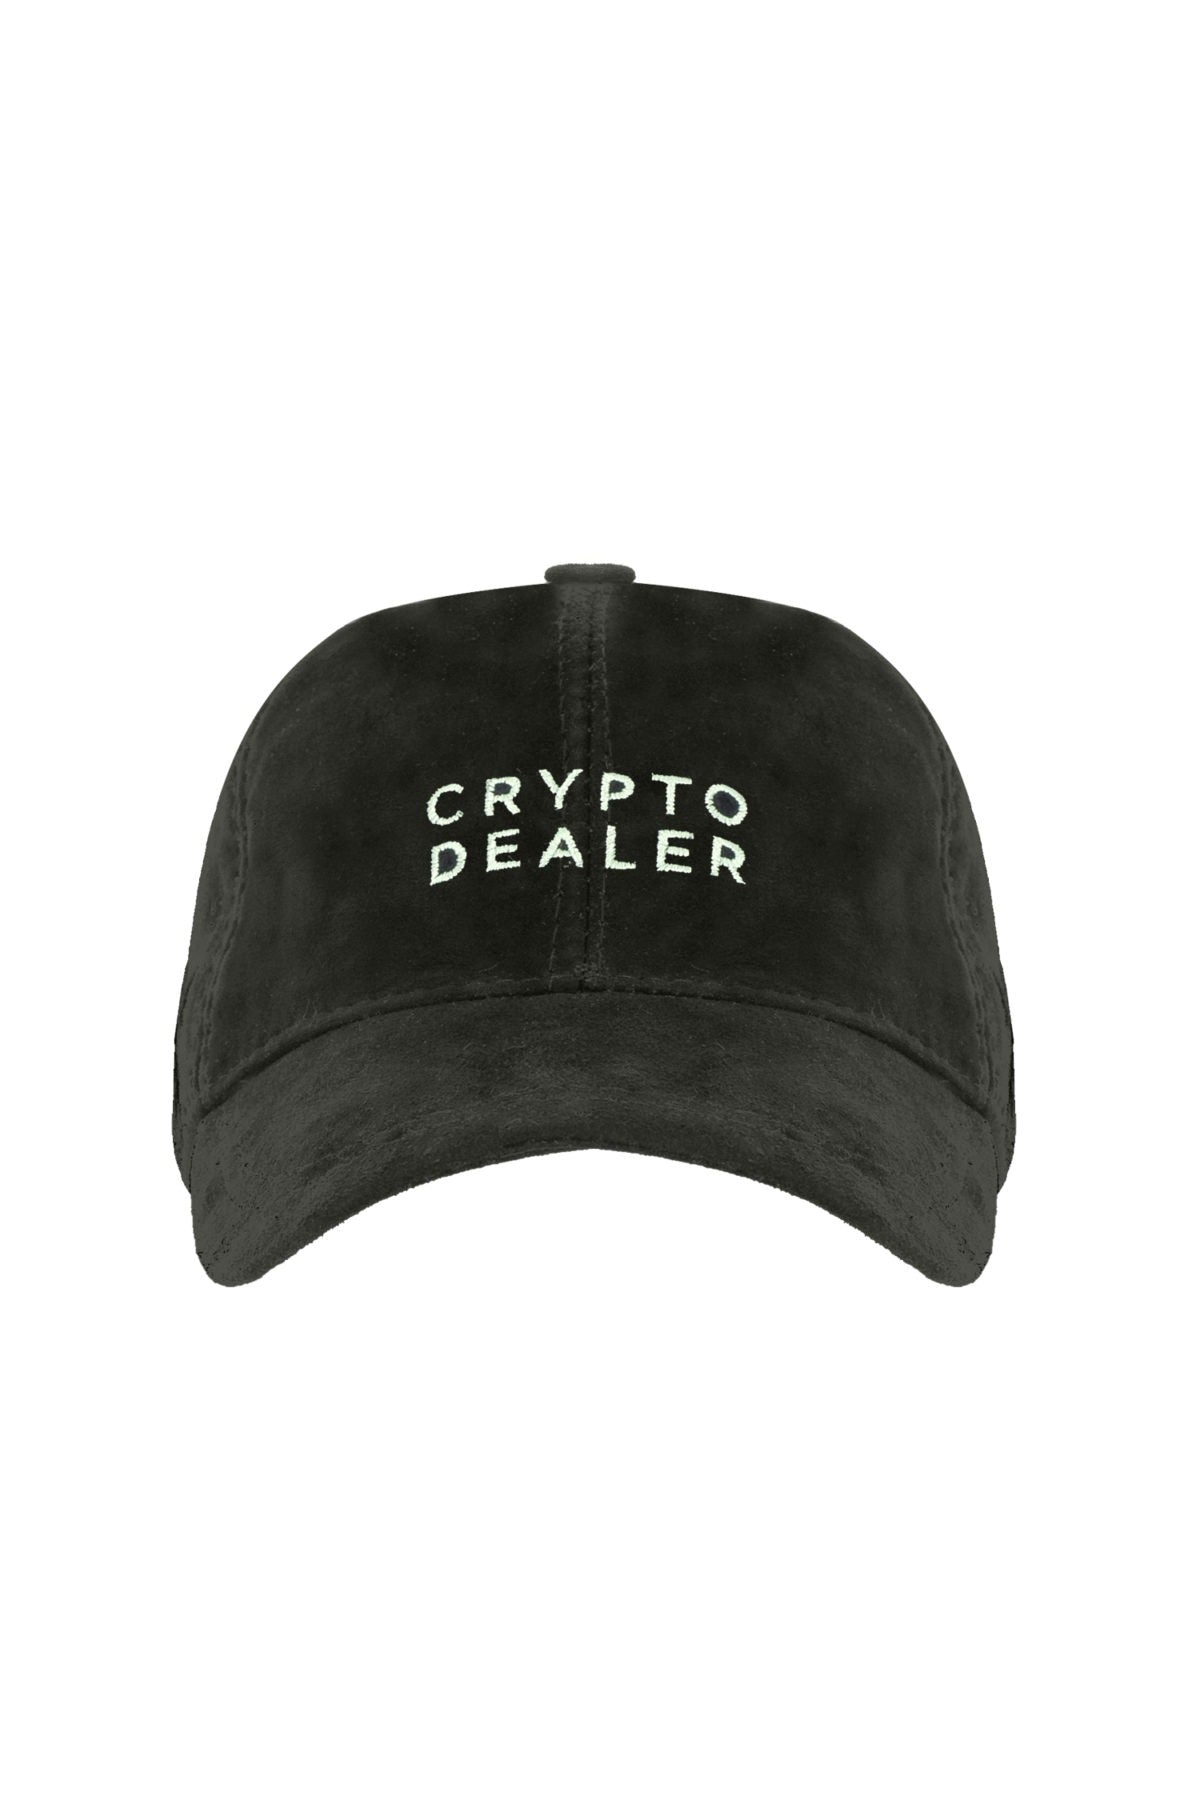 Crypto Dealer - Duck Green